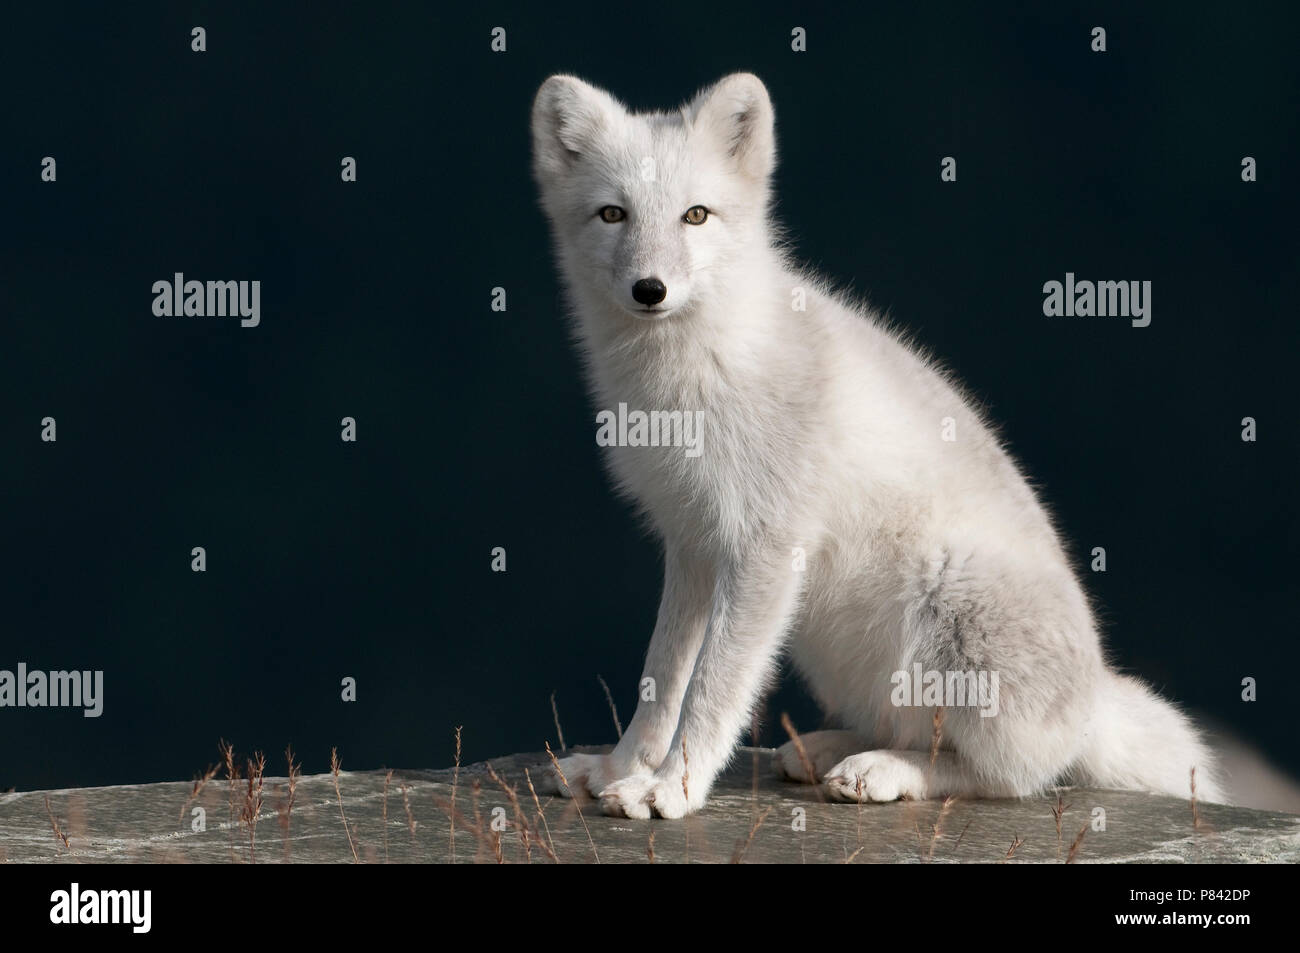 Dans Poolvos wintervacht ; renard arctique en hiver coat Banque D'Images